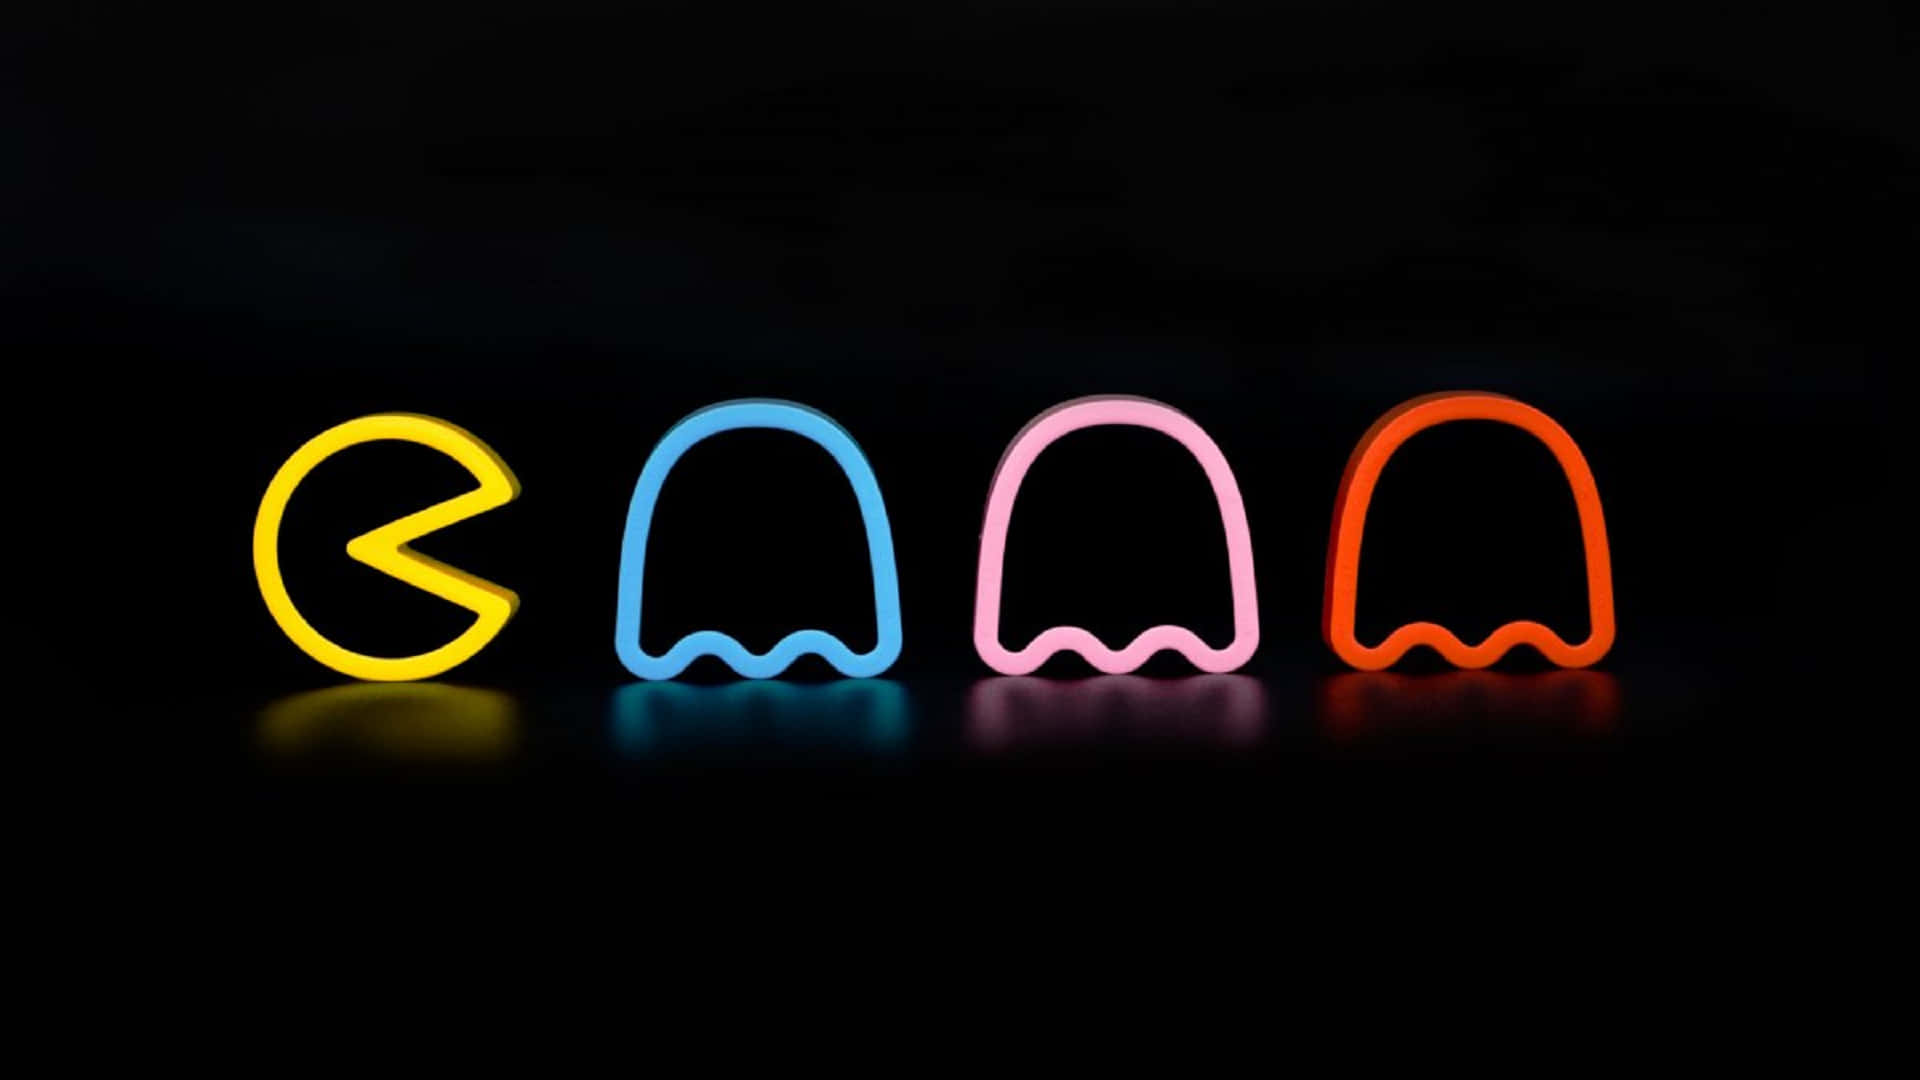 Neon-spøgelser - Pacman - Neon-skilt Wallpaper